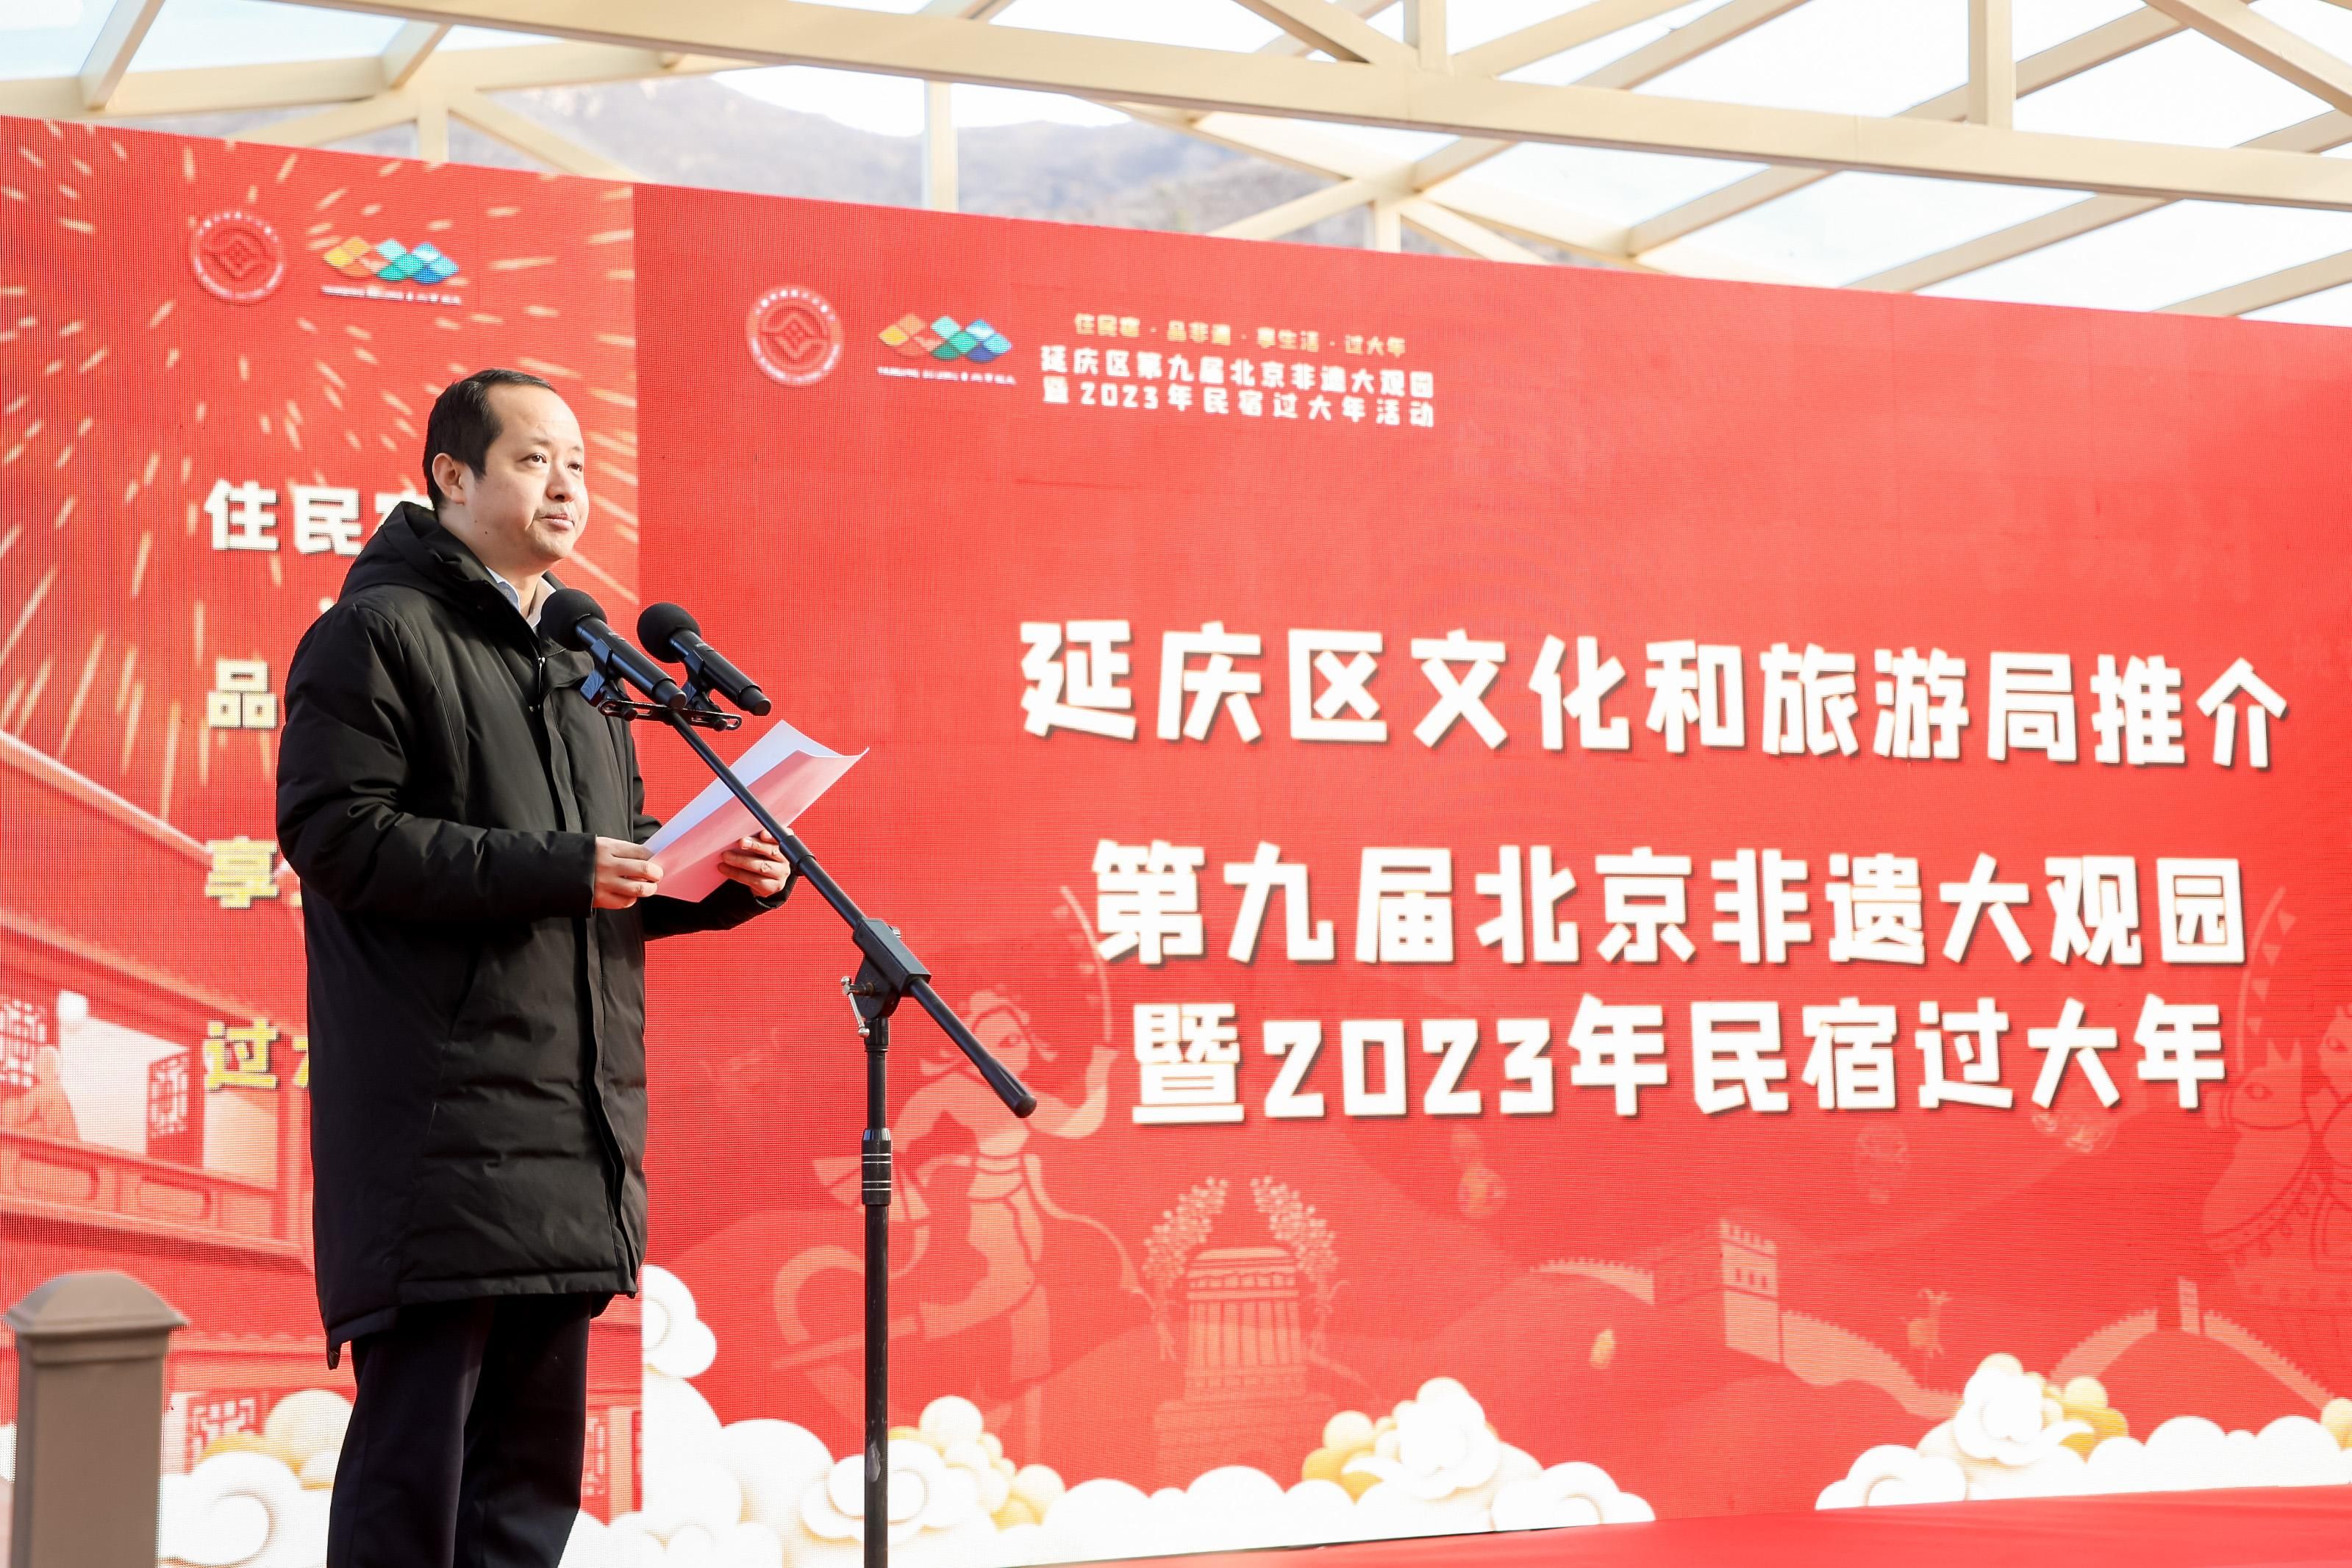 延庆区第九届北京非遗大观园暨2023民宿过大年活动正式启动